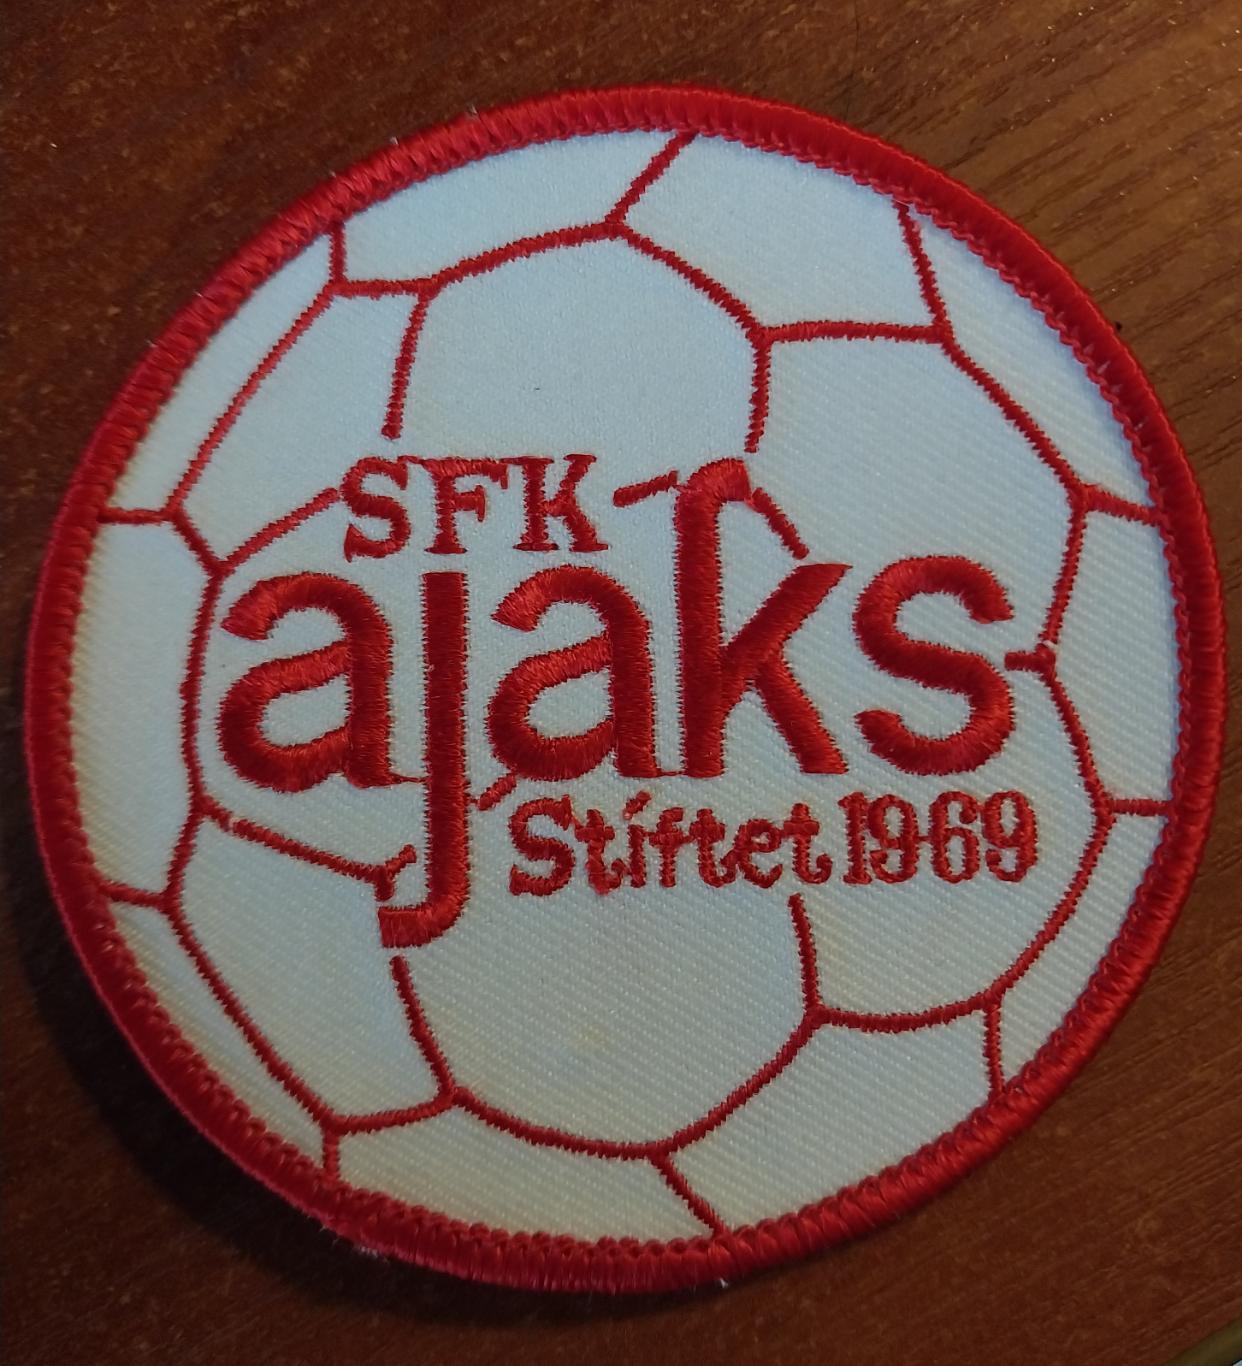 SFK ajaks Stiftet 1969 (футбол)